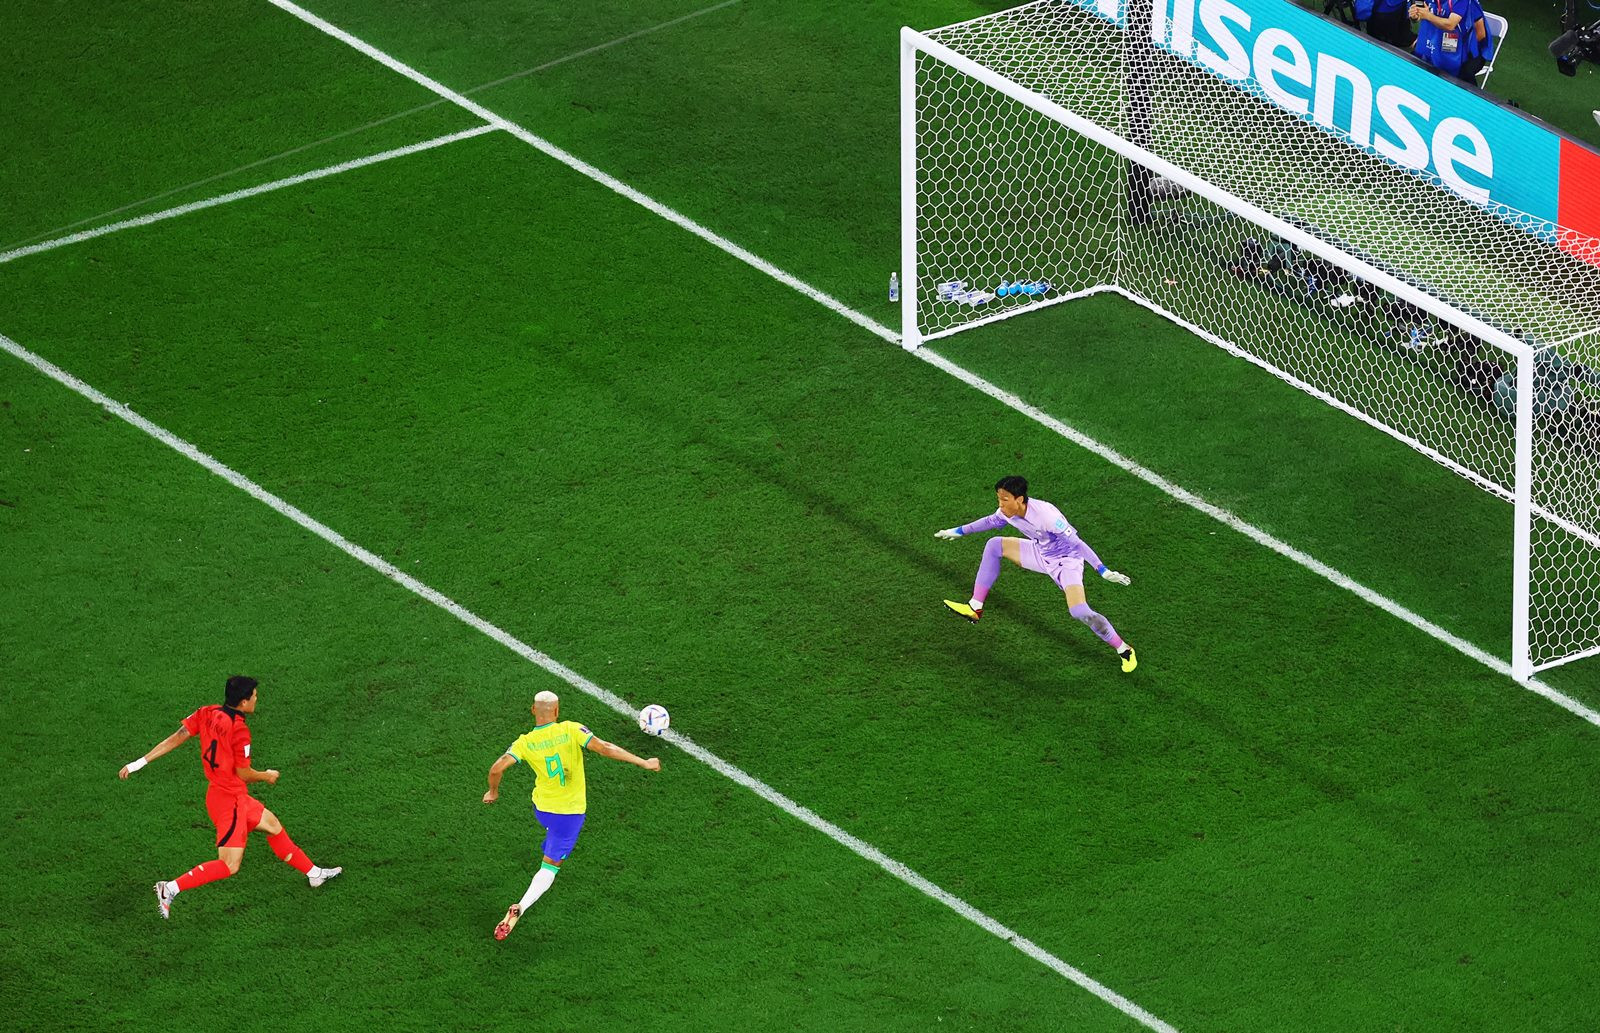 Phút 29 khi Brazil đang dẫn trước Hàn Quốc 2-0, Selecao có pha phối hợp tam giác đẹp mắt giữa Richarlison - Casemiro - Marquinhos.